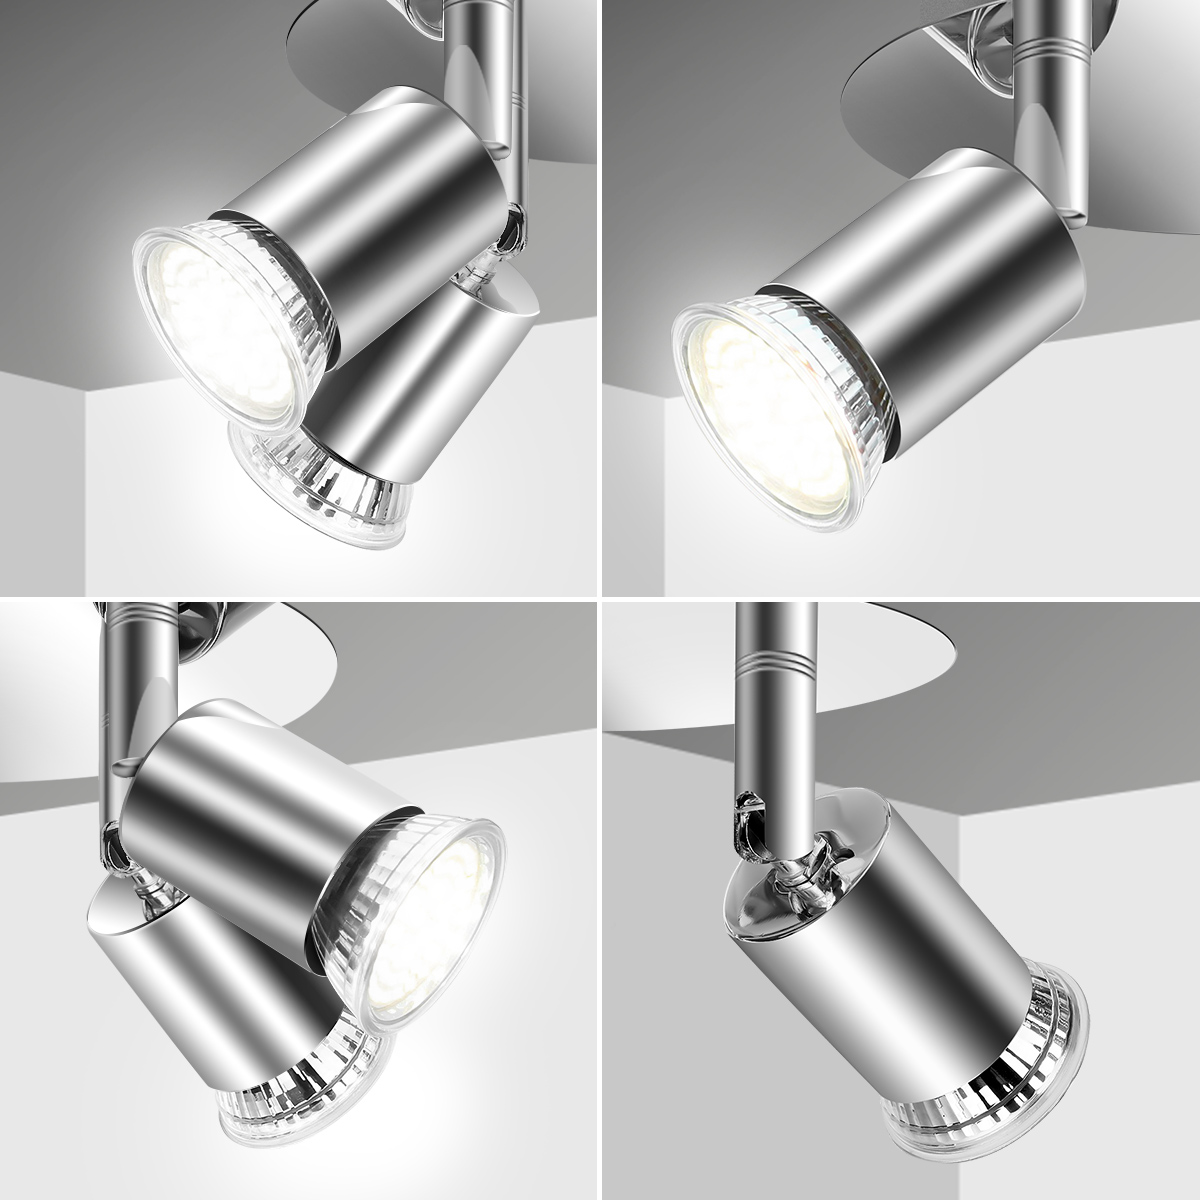 Elfeland-100-220V-4-Way-GU10-LED-Rotatable-Ceiling-Light-Lamp-Bulb-Spotlight-Fitting-Home-Lighting-1888430-4